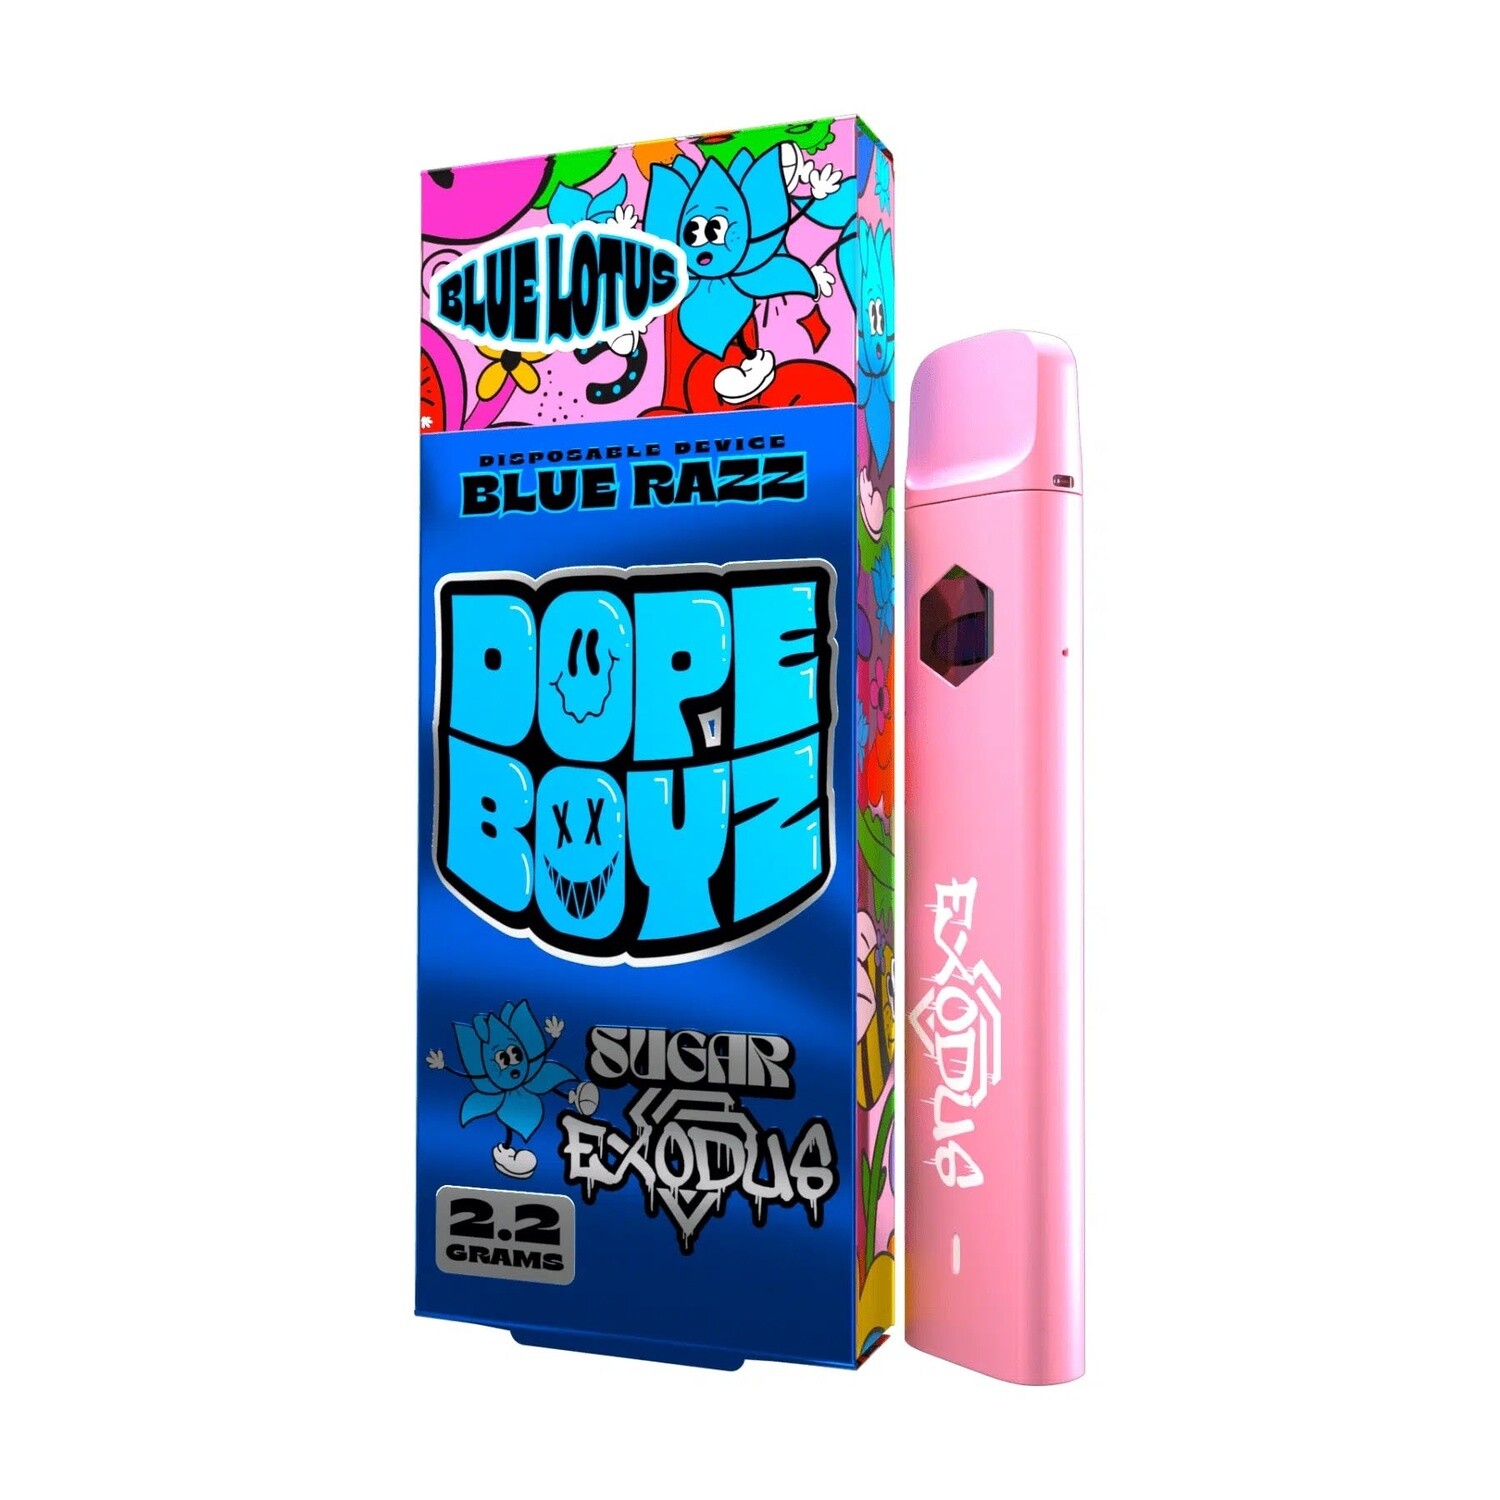 Dope Boyz Blue Lotus Disposable, Blue Razz